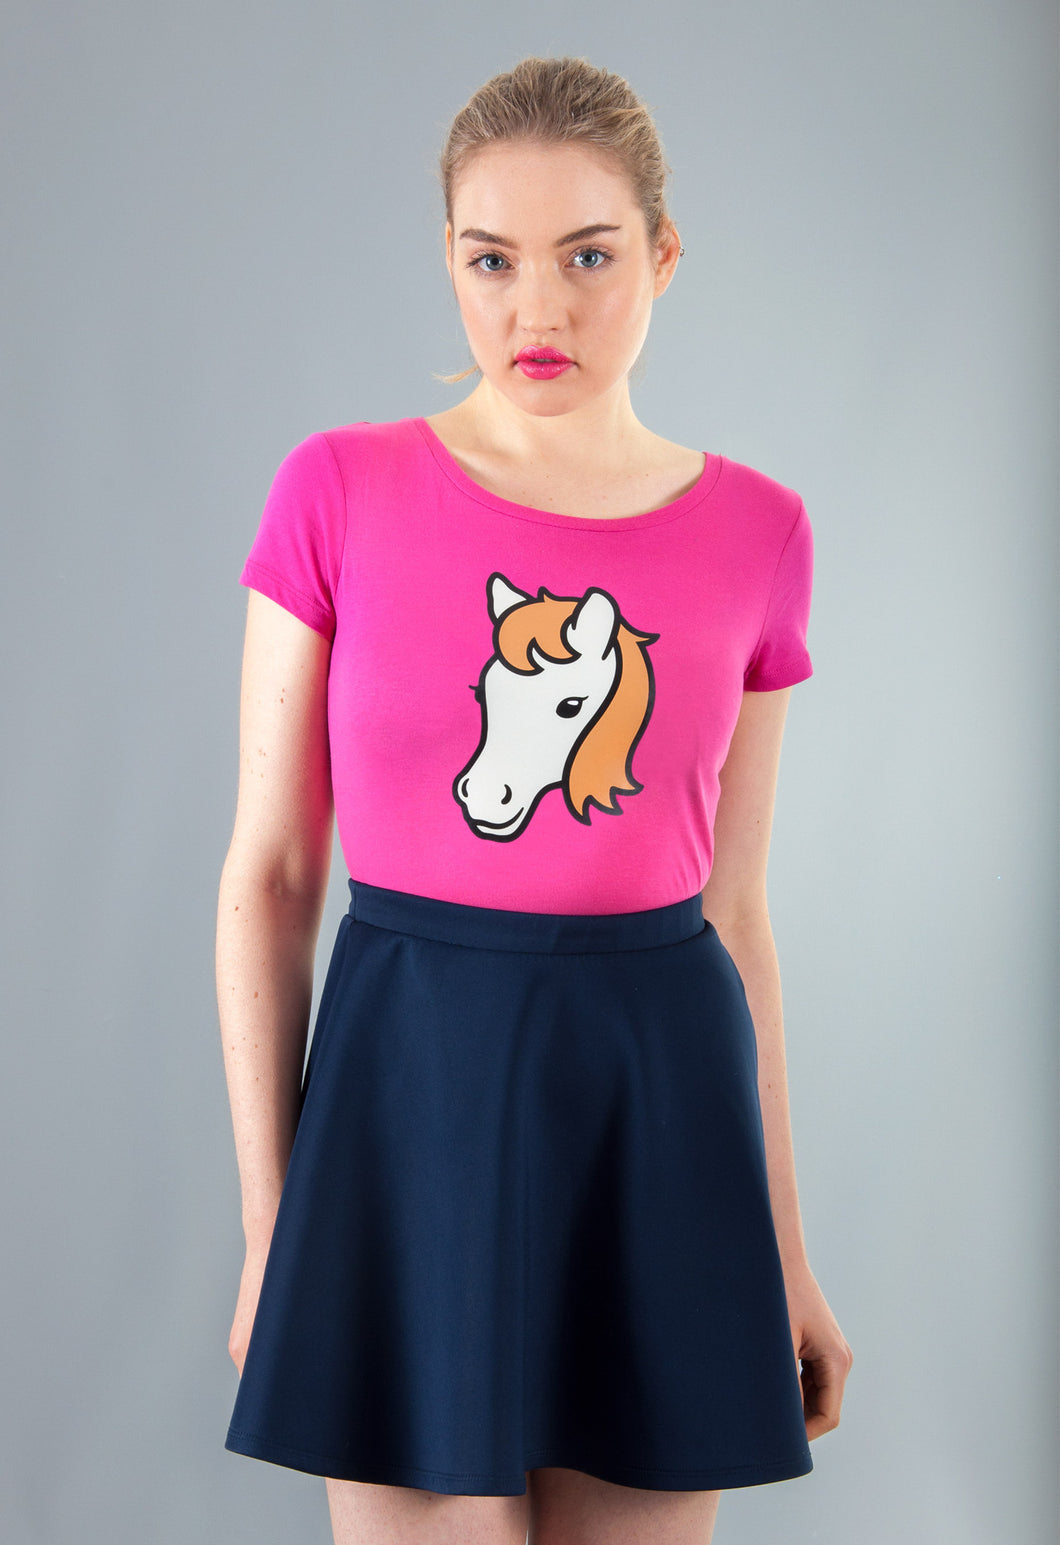 pink horse t-shirt